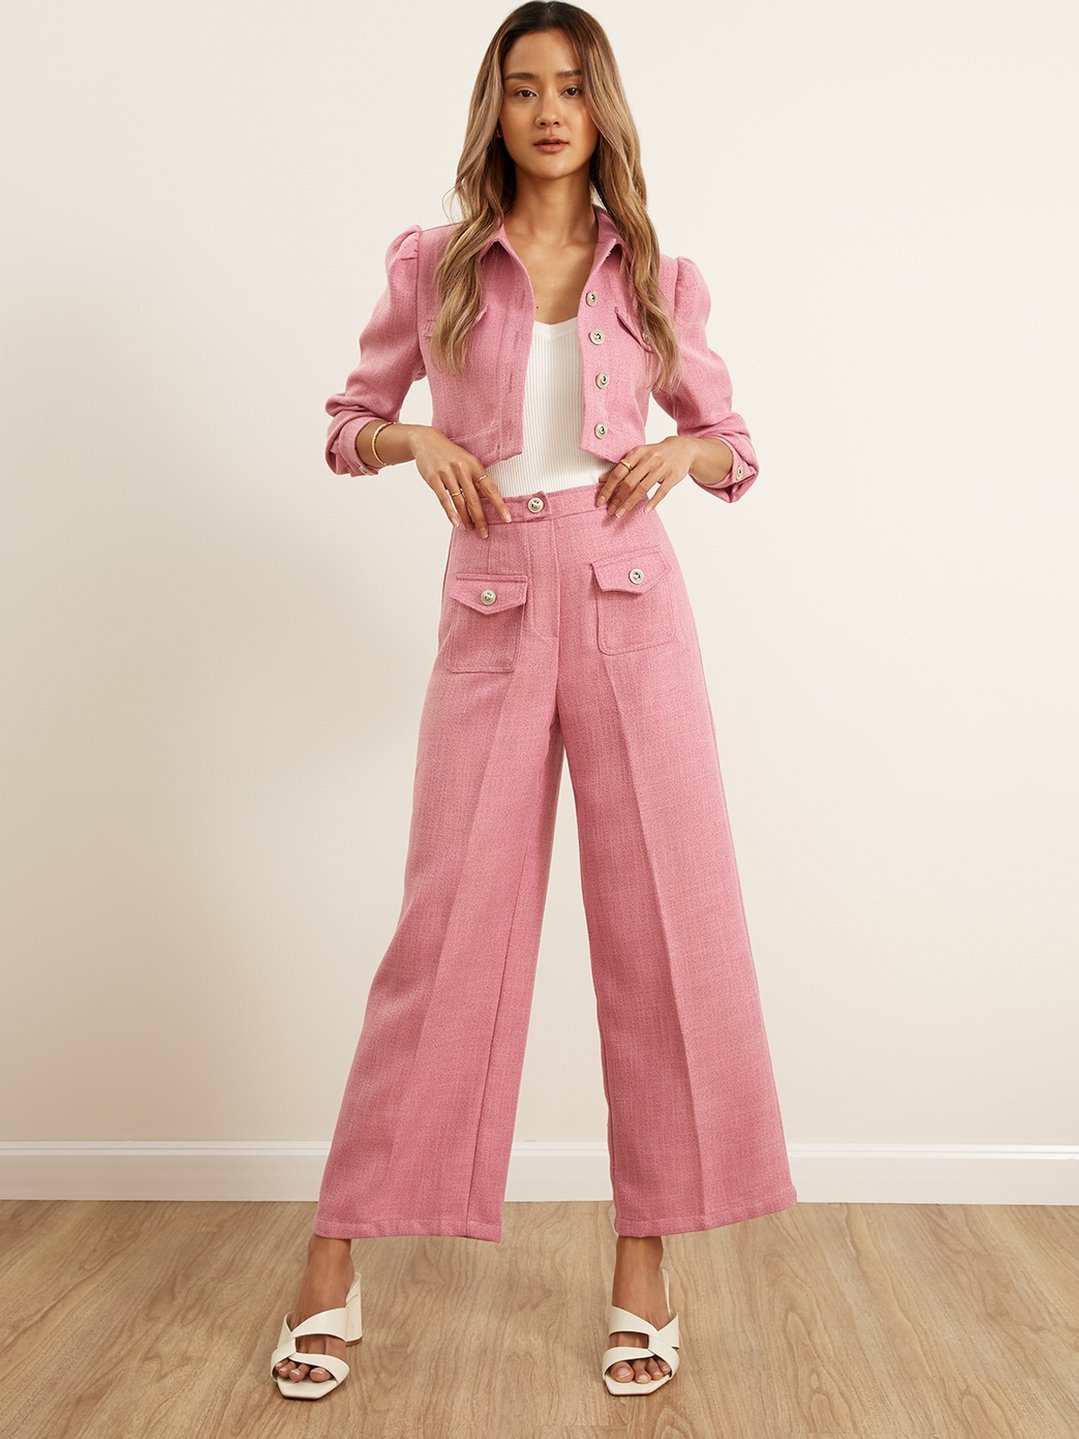 Rhinestone Button Wide Leg Pants - Pink - Pomelo Fashion